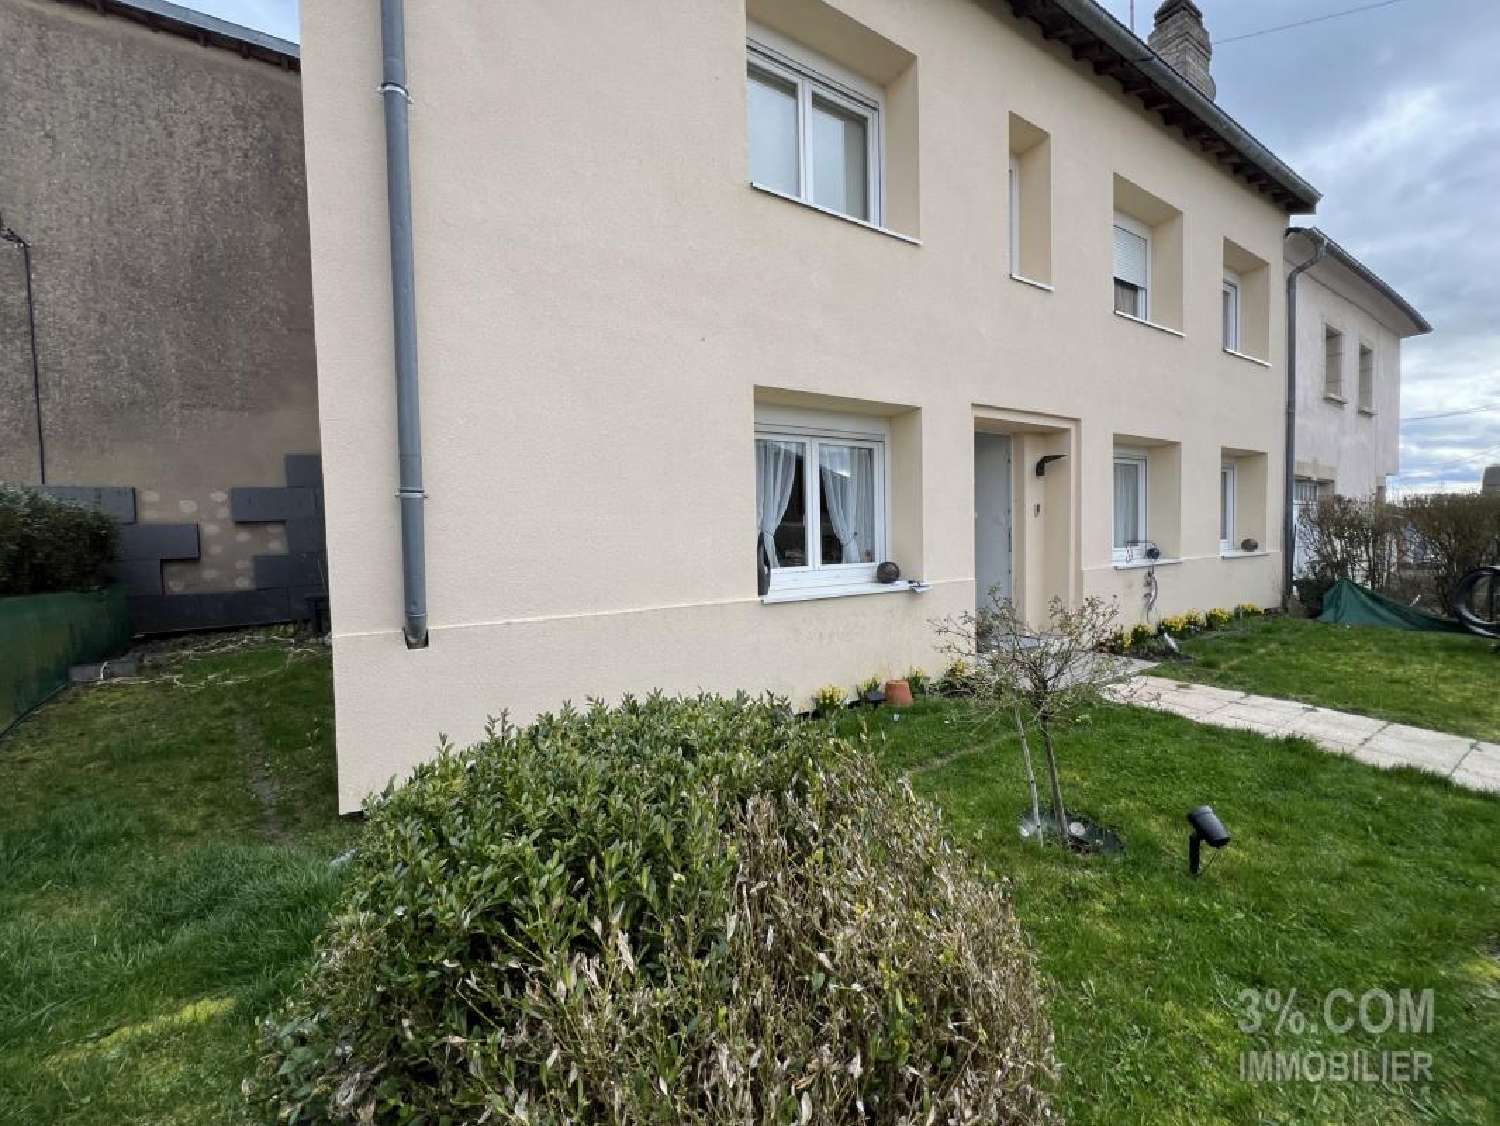  à vendre maison Domjevin Meurthe-et-Moselle 1